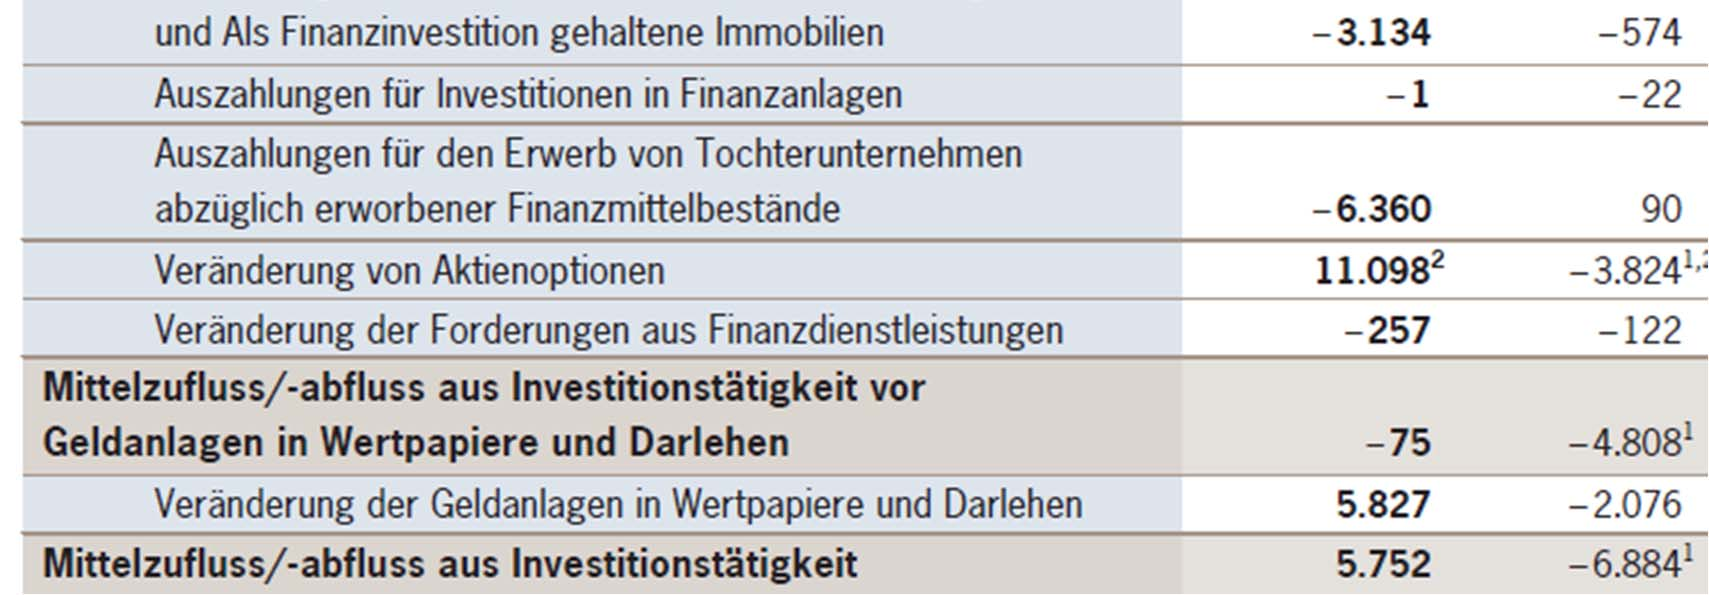 Porsche Konzern-Kapitalflussrechnung für die Zeit vom 1.8.2008 bis 31.7.2009 2.